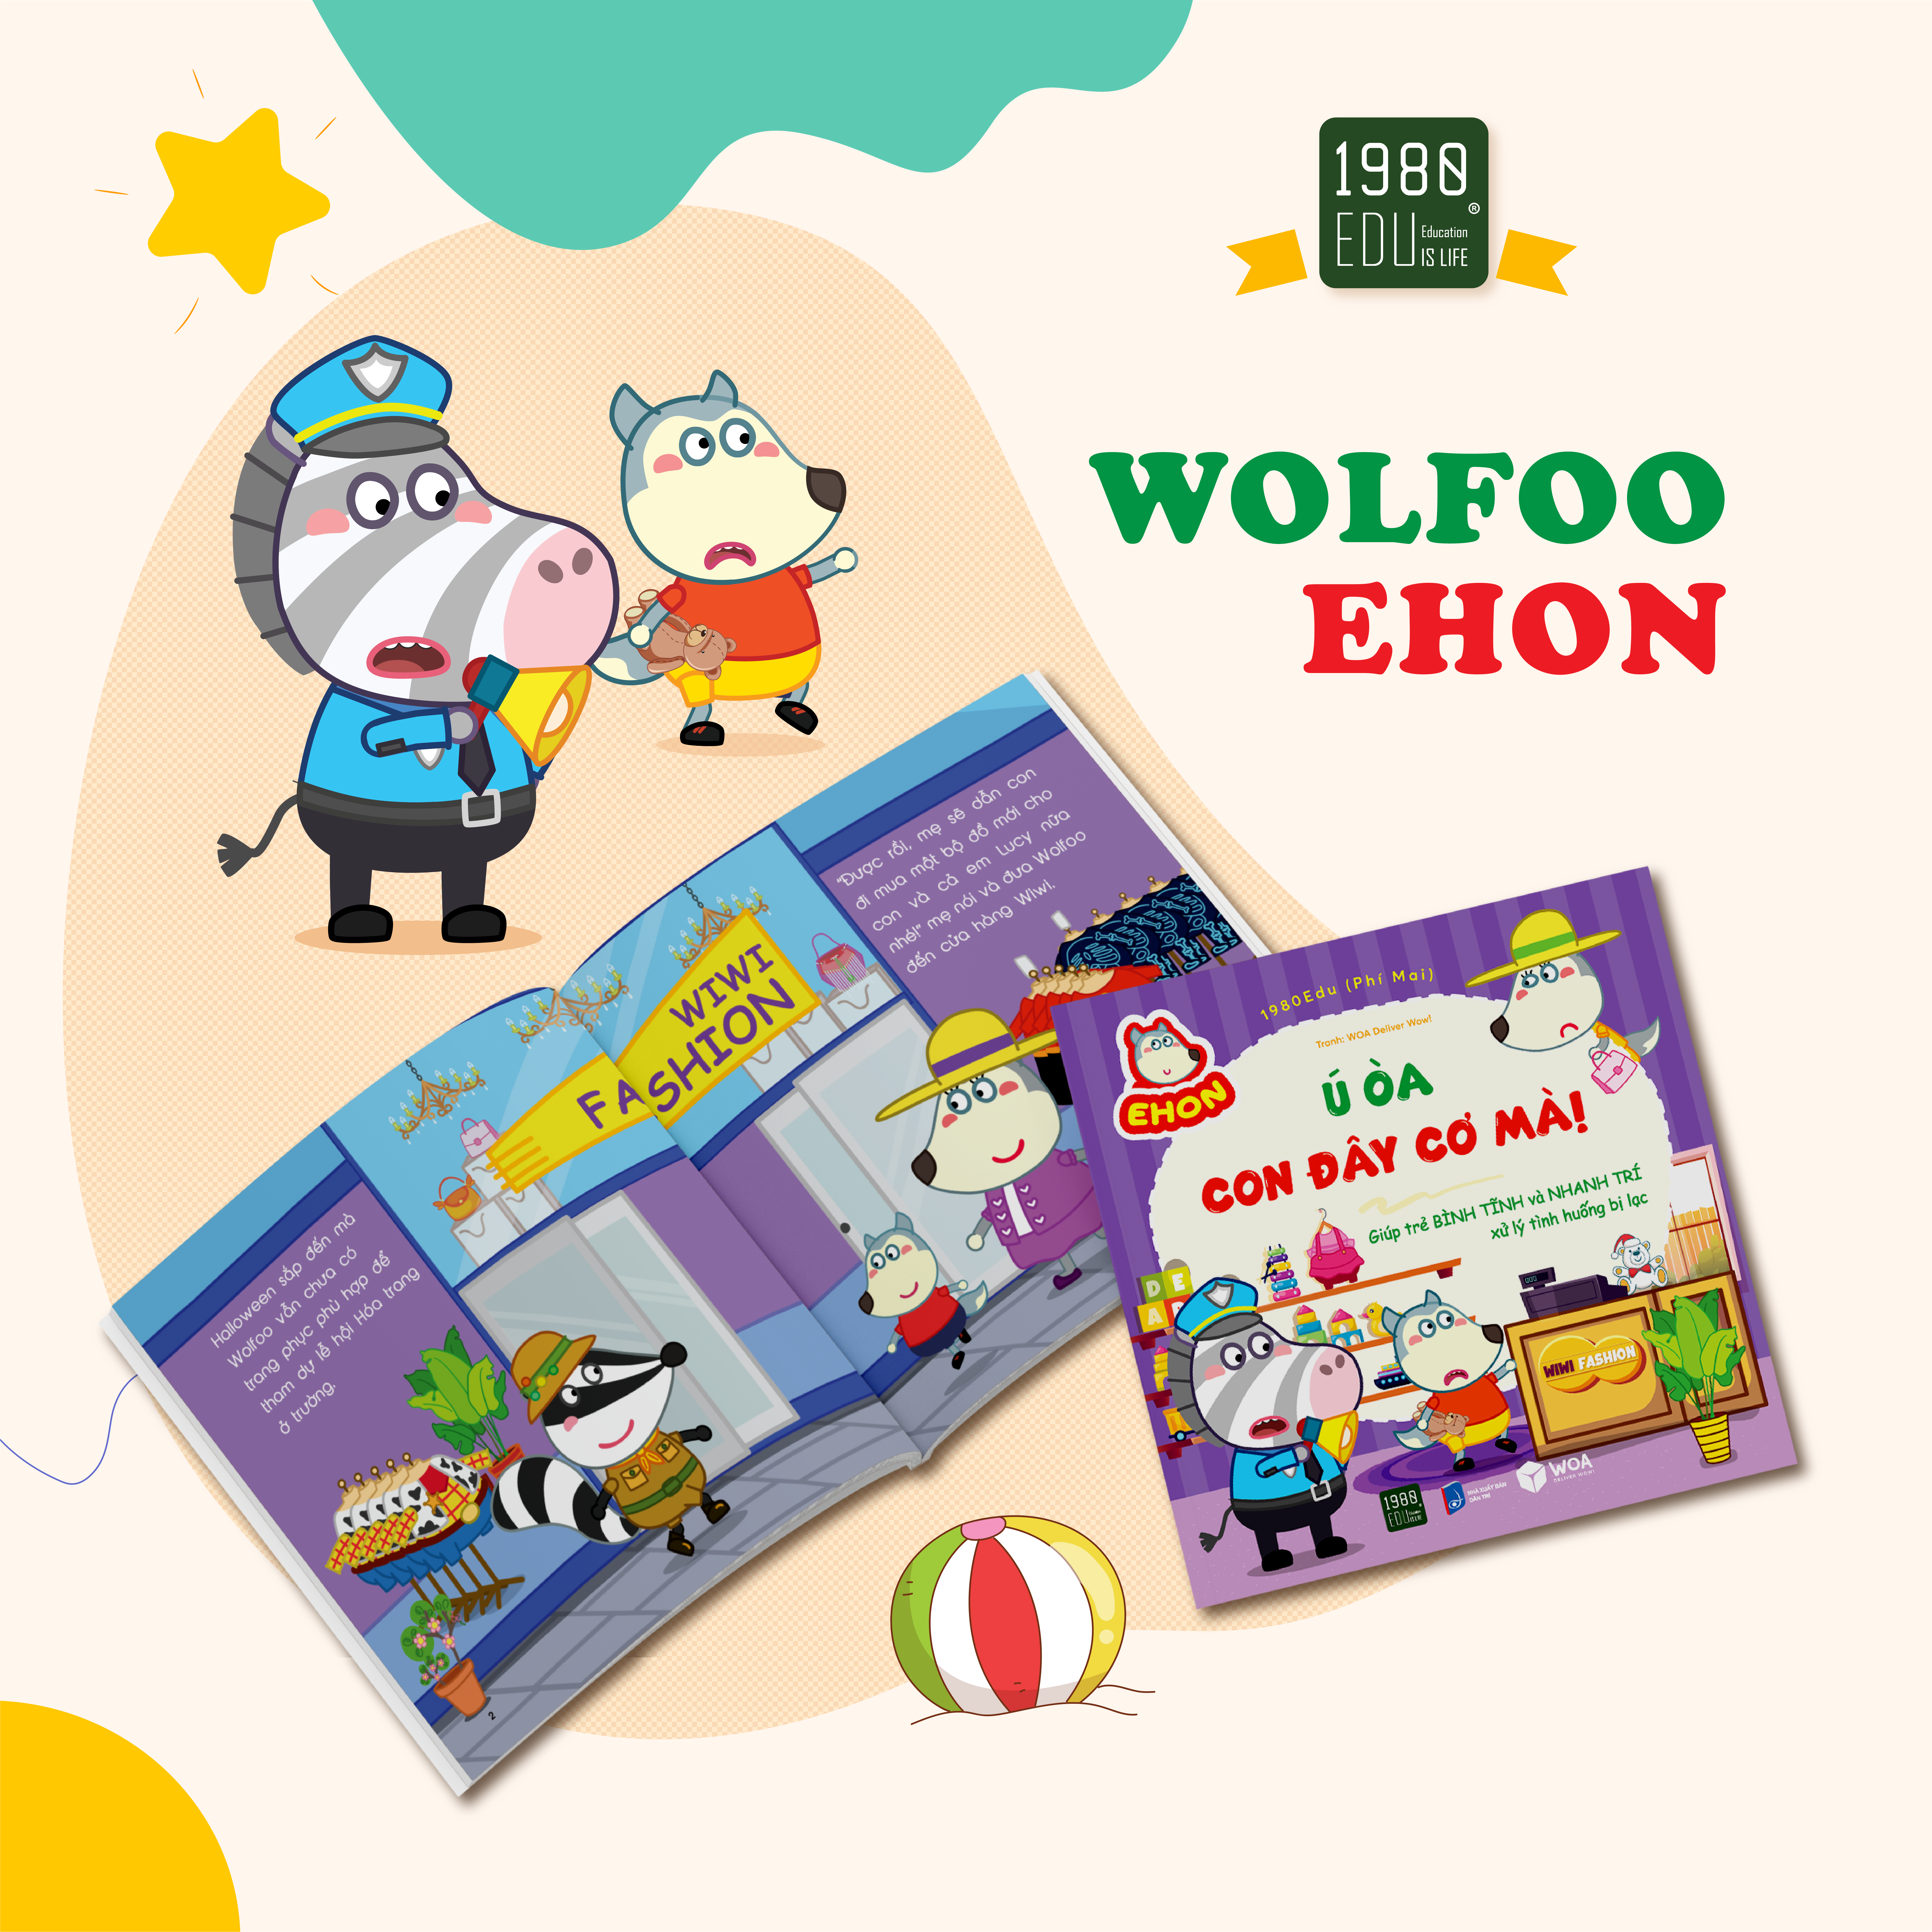 Sách Wolfoo Ehon - Ú Òa, Con Ở Đây Mà!